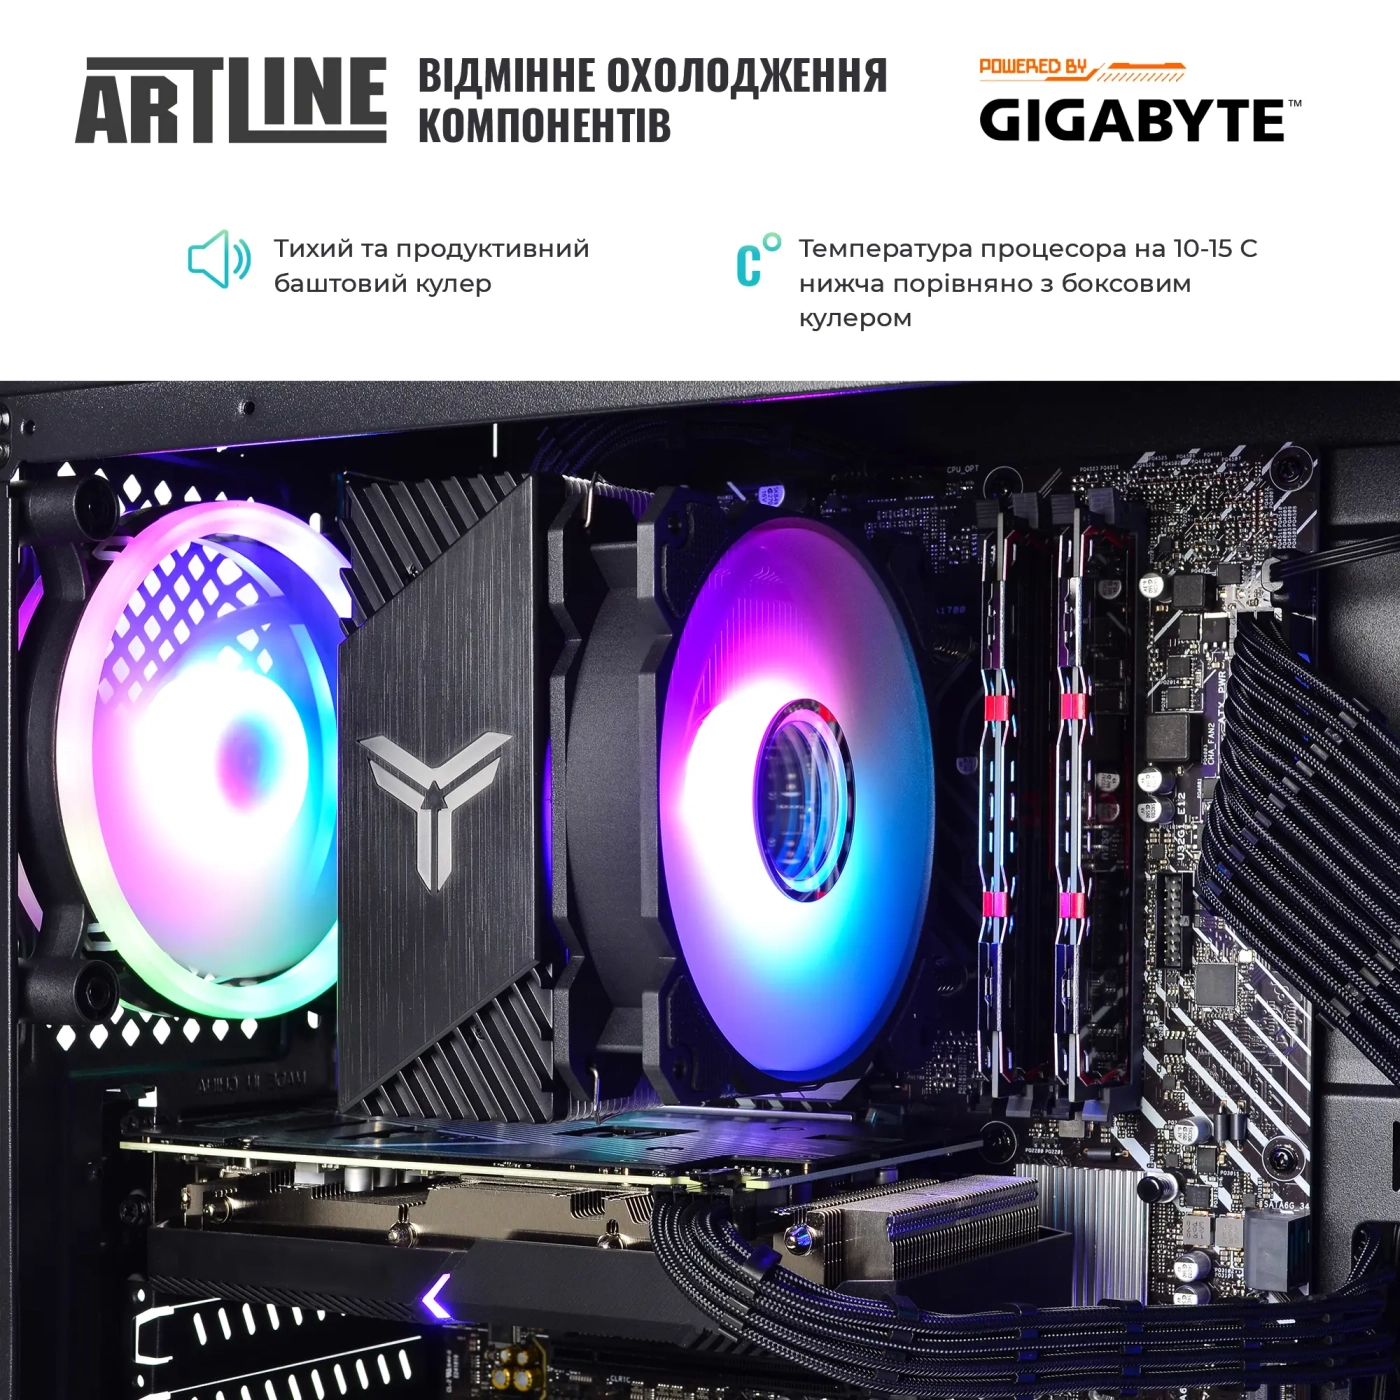 Купить Компьютер ARTLINE Overlord NEONv80 Gigabyte Edition - фото 6